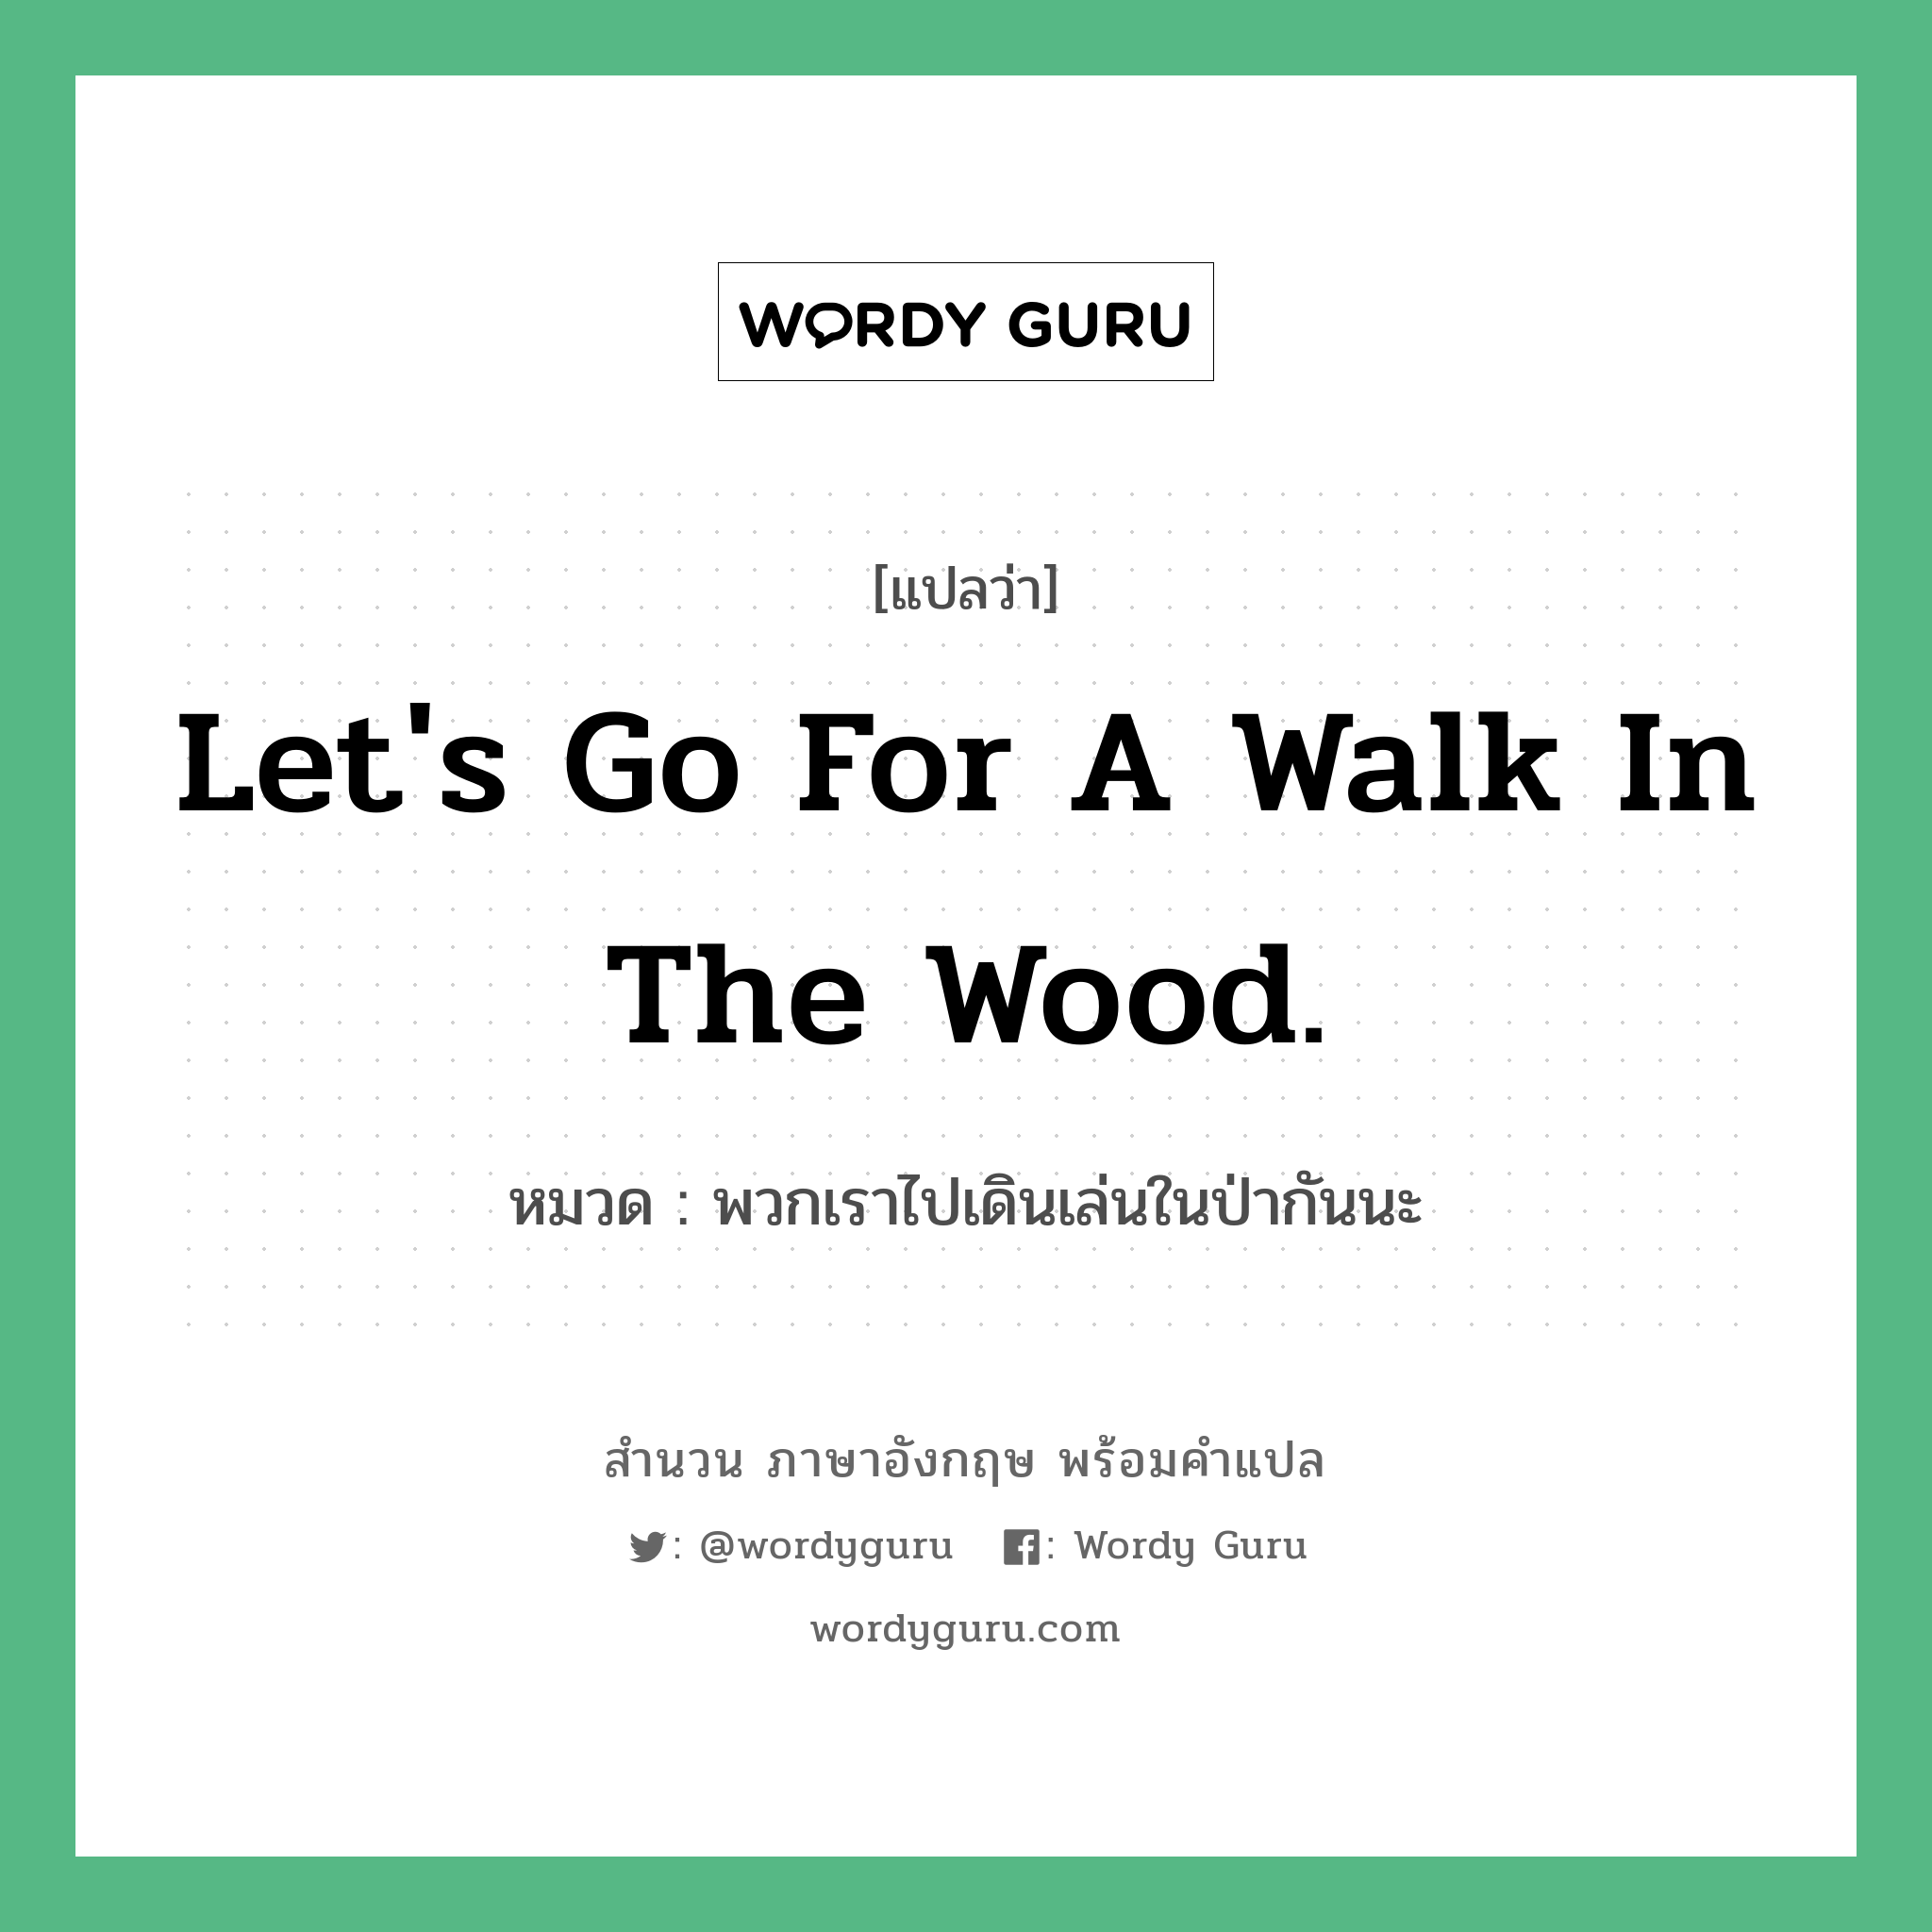 Let's go for a walk in the wood. แปลว่า?, สำนวนภาษาอังกฤษ Let's go for a walk in the wood. หมวด พวกเราไปเดินเล่นในป่ากันนะ